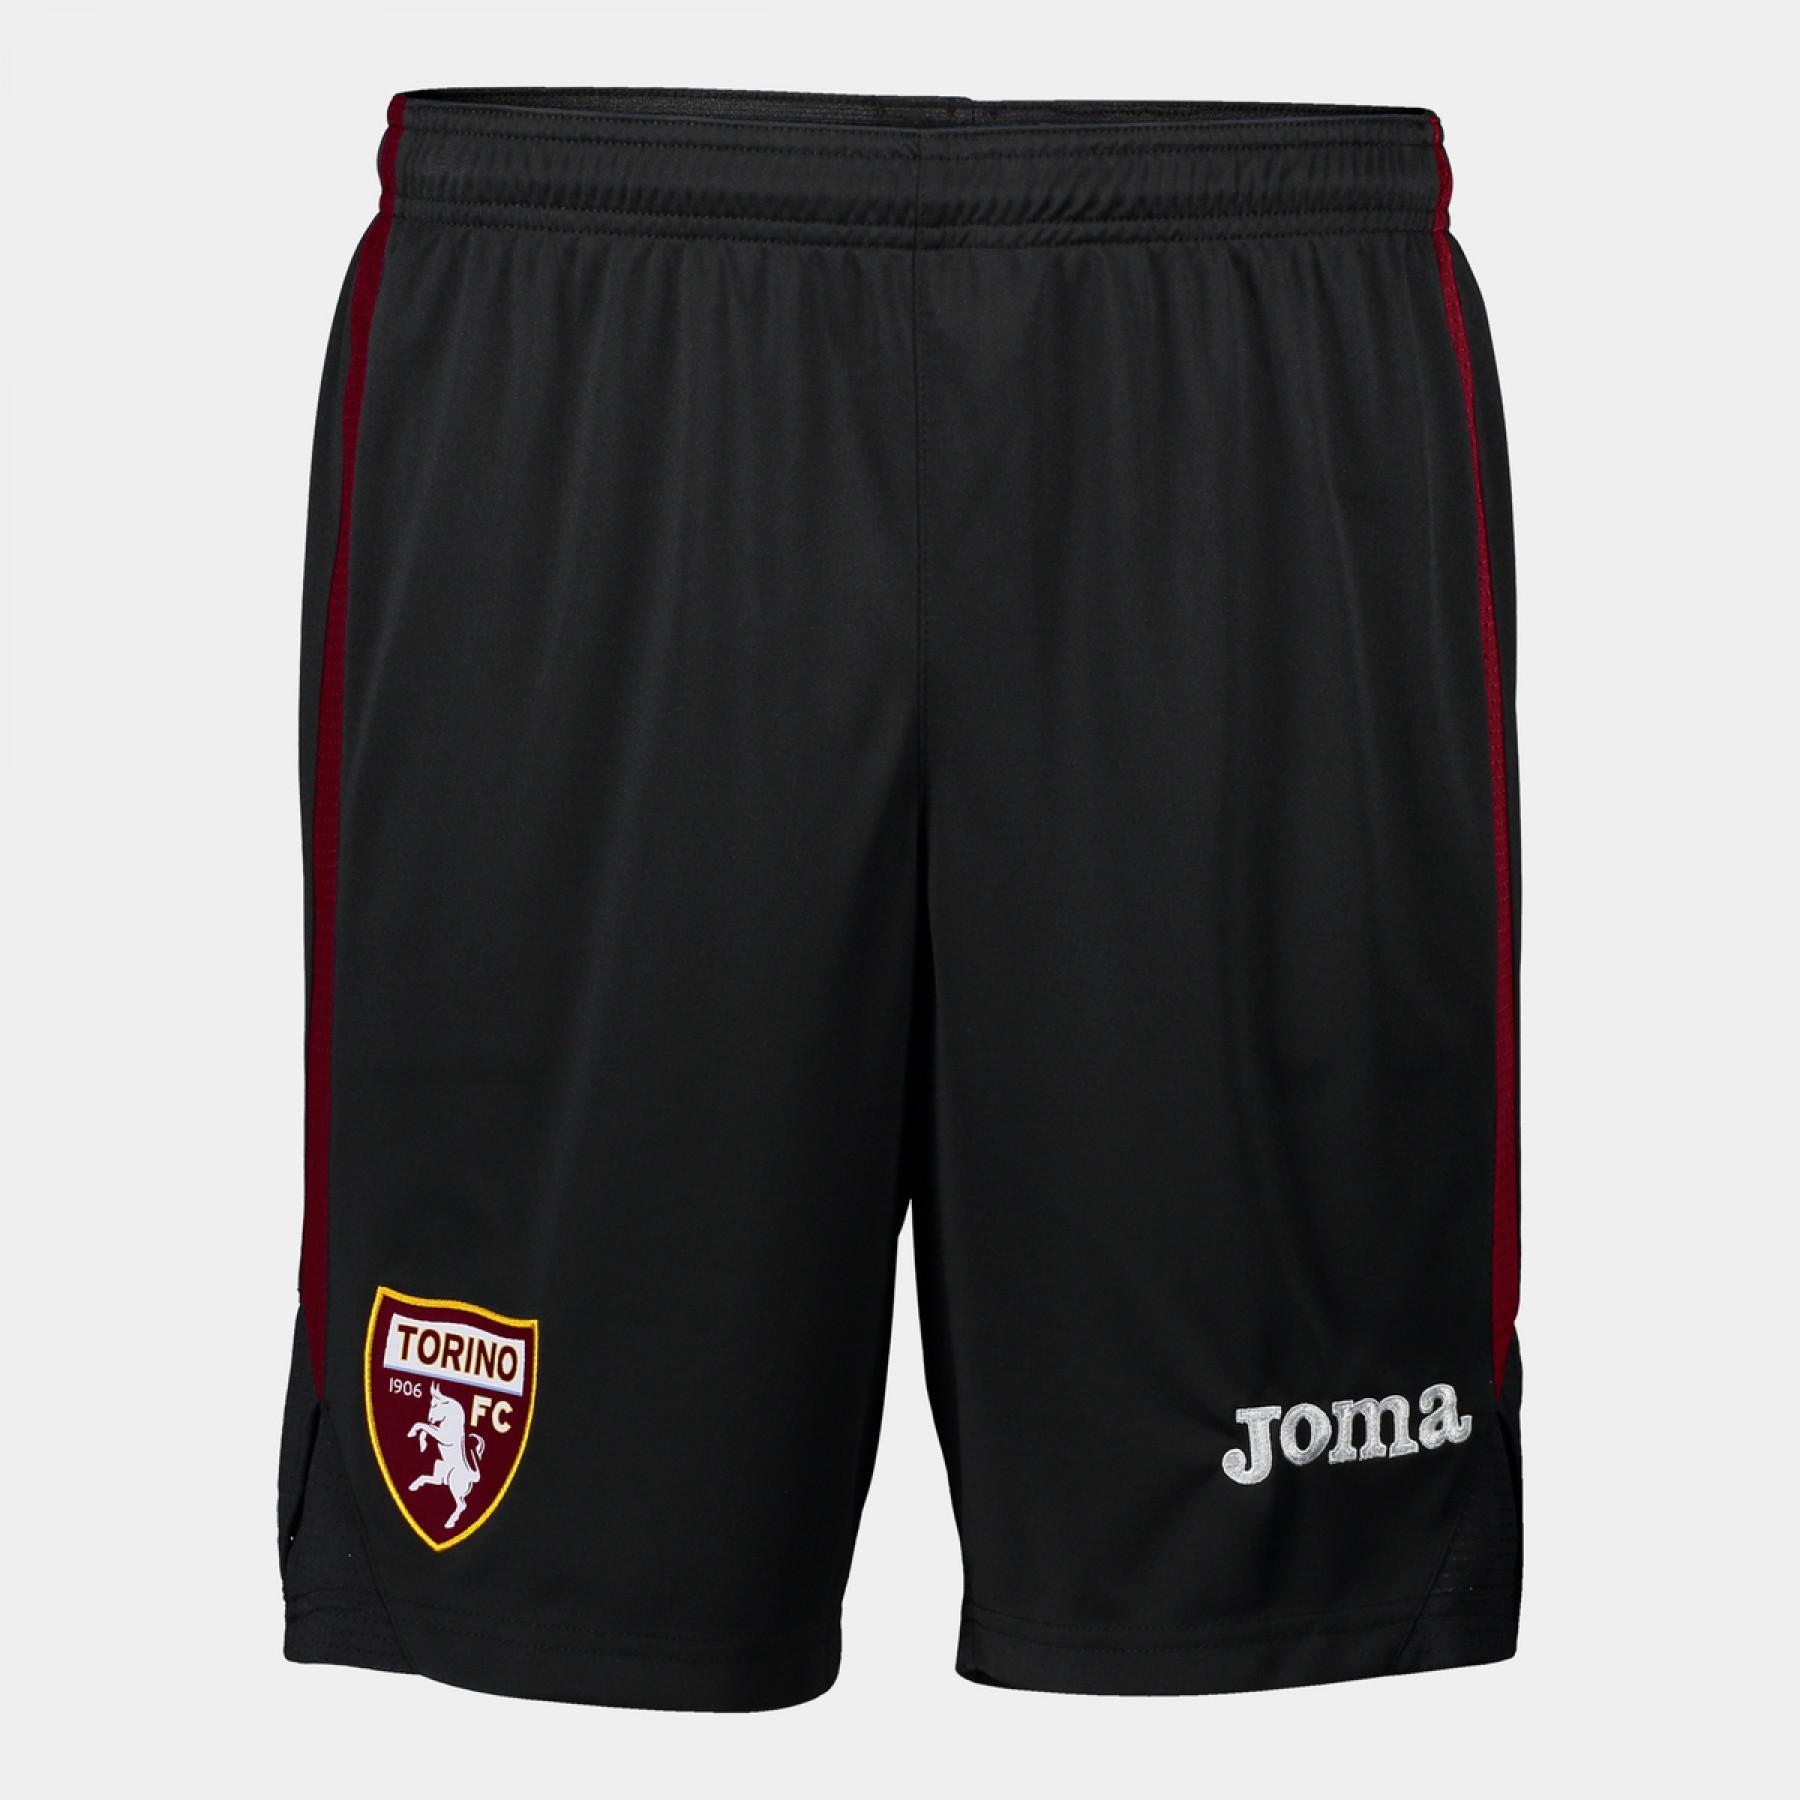 Pantalones cortos de portero Torino FC 2020/21